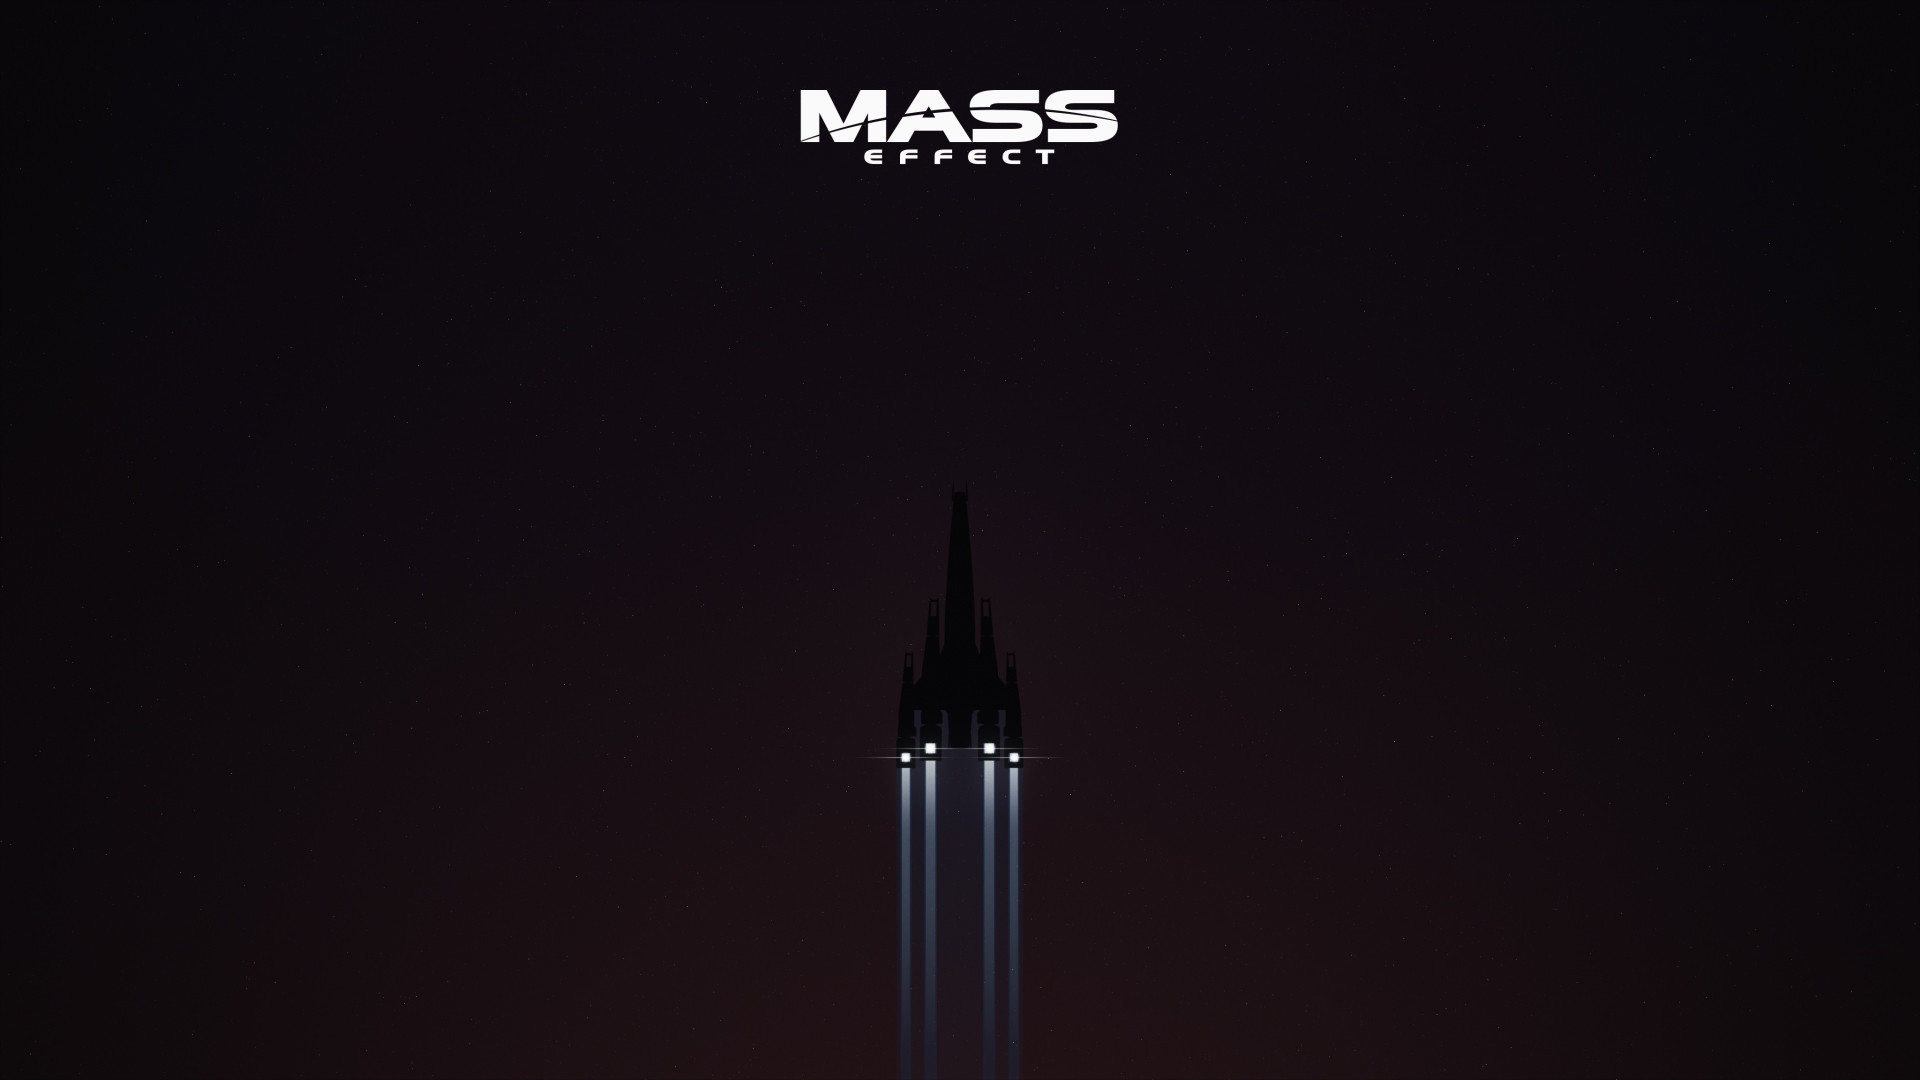 1920x1080 Mass Effect Wallpapers - Imgur